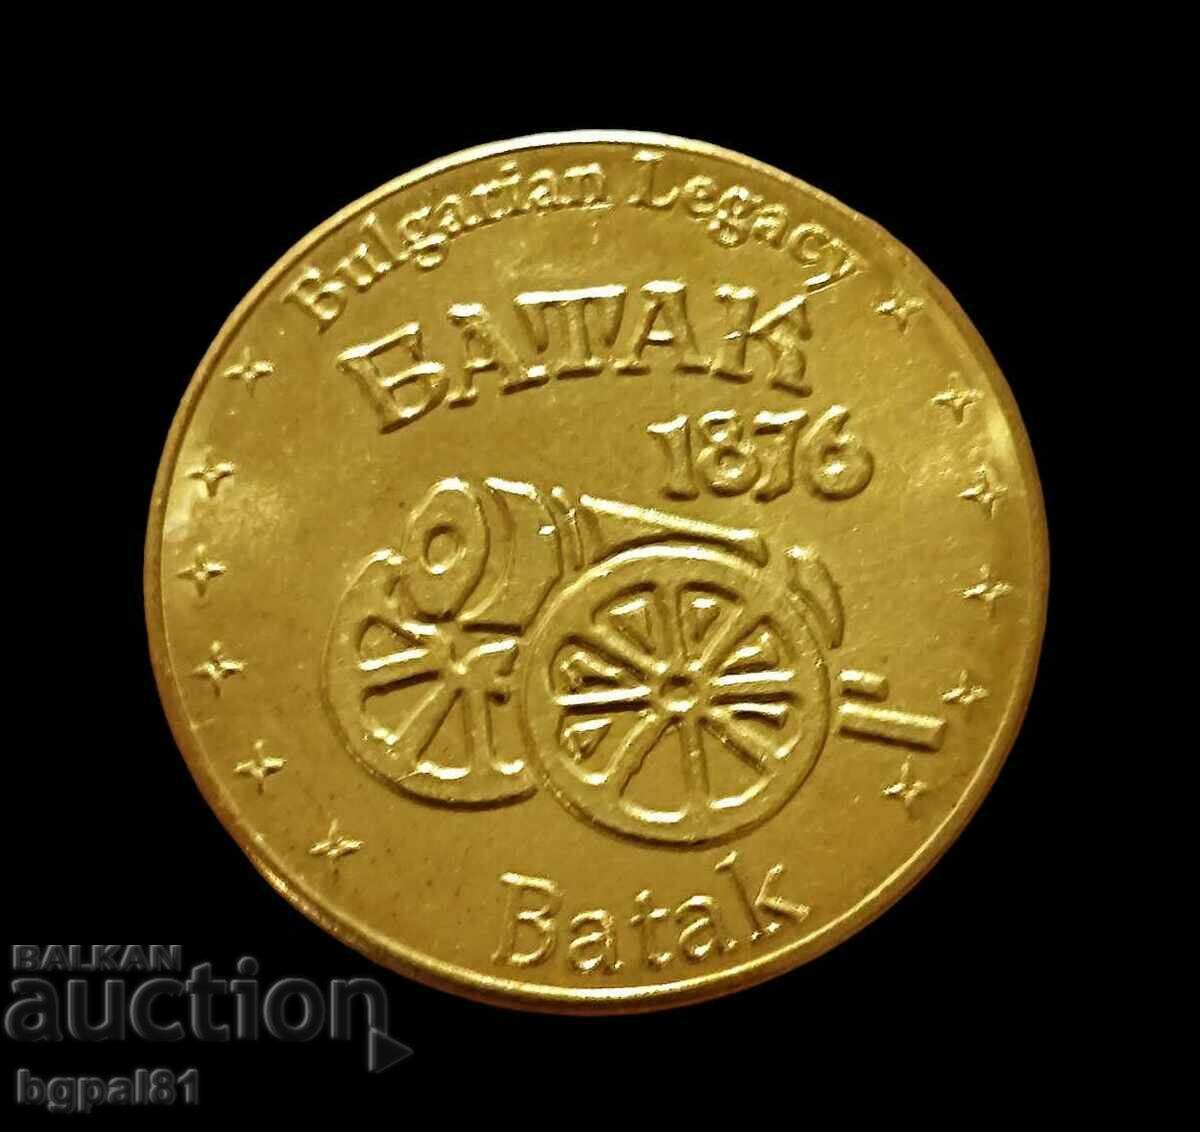 Batak - Medal issue "Bulgarian legacy